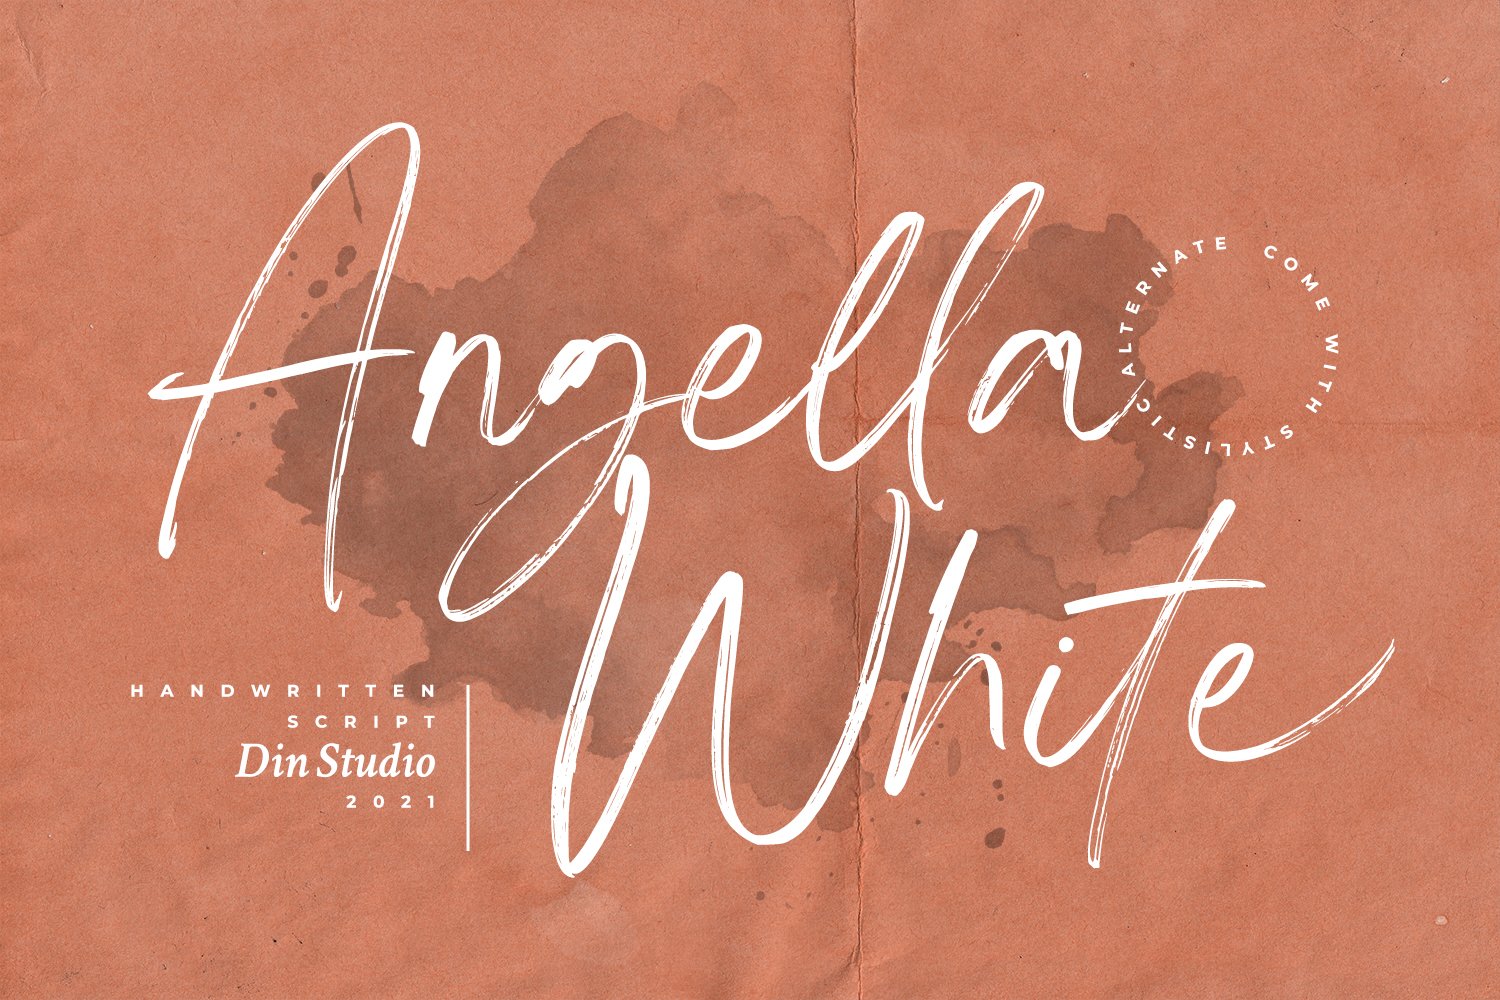 Angella White cover image.